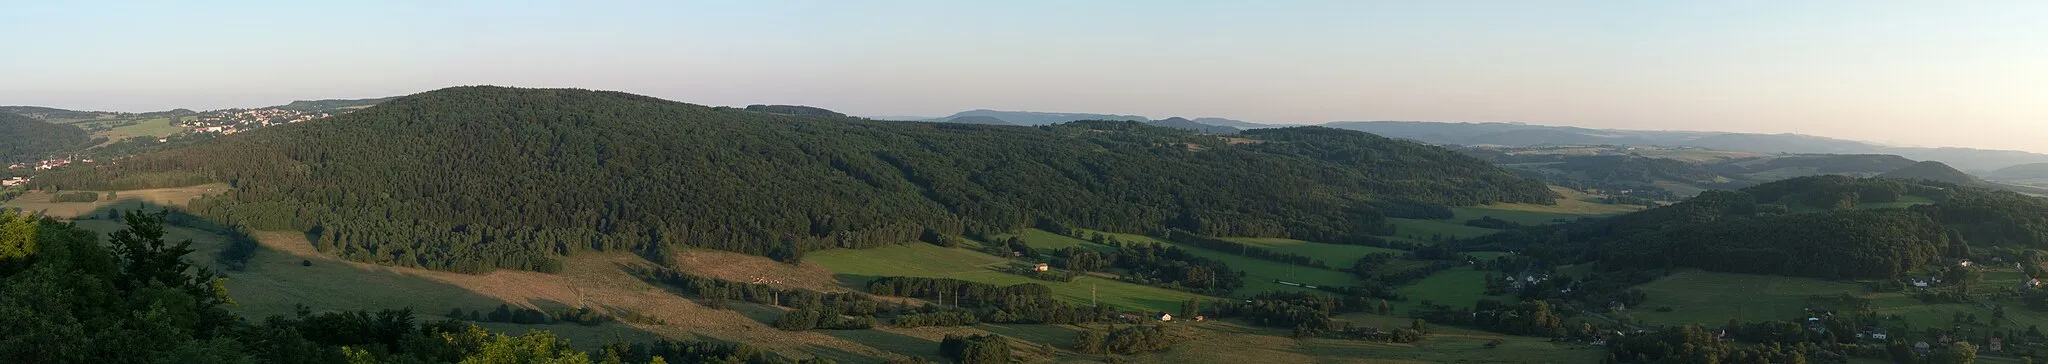 Photo showing: Panorama of the south of the Kamenický castle observation tower on Castle Hill near the town of Česká Kamenice, Ústí nad Labem Region, Czech Republic